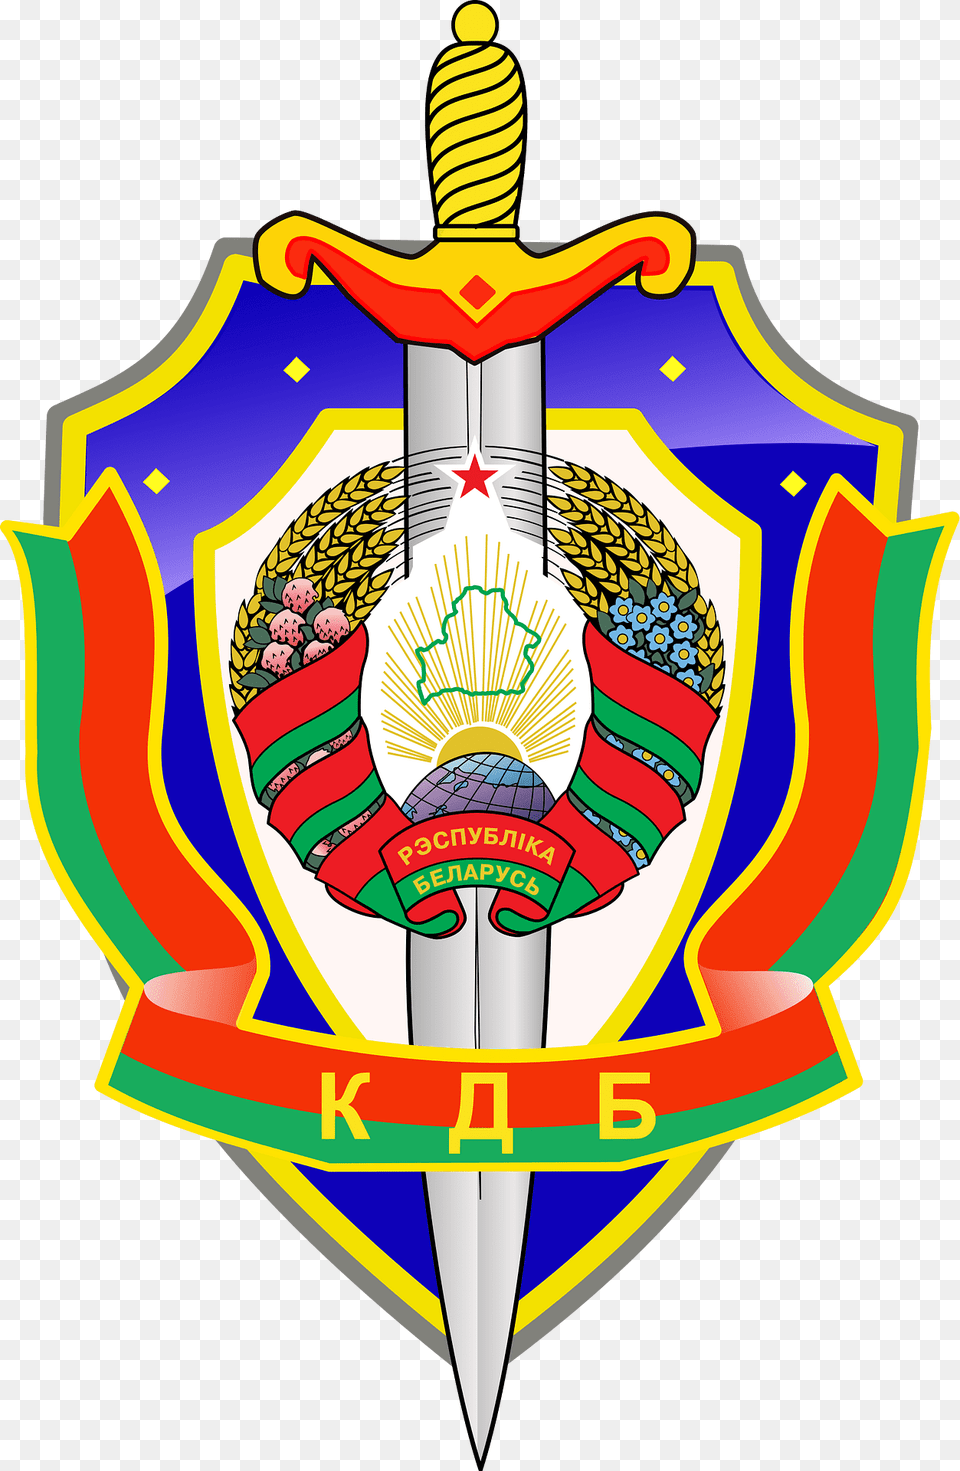 Kgb Belarus Crest Clipart, Sword, Weapon, Blade, Dagger Free Png Download